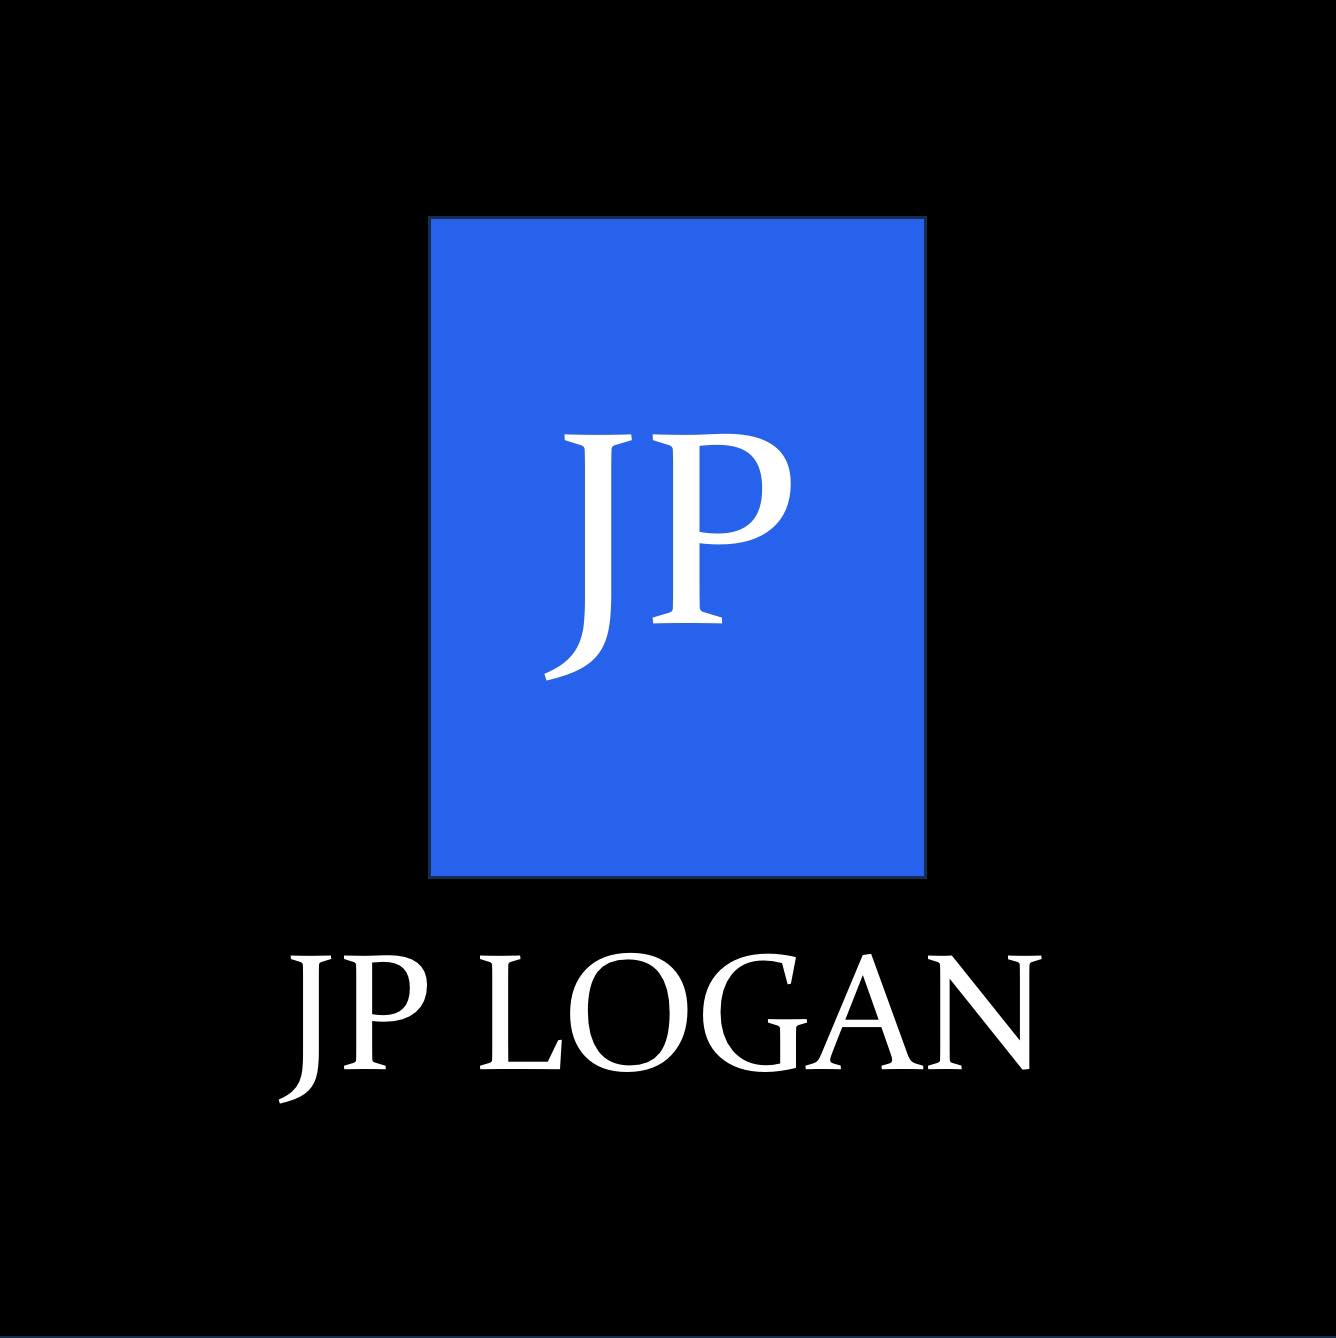 JP-LOGAN